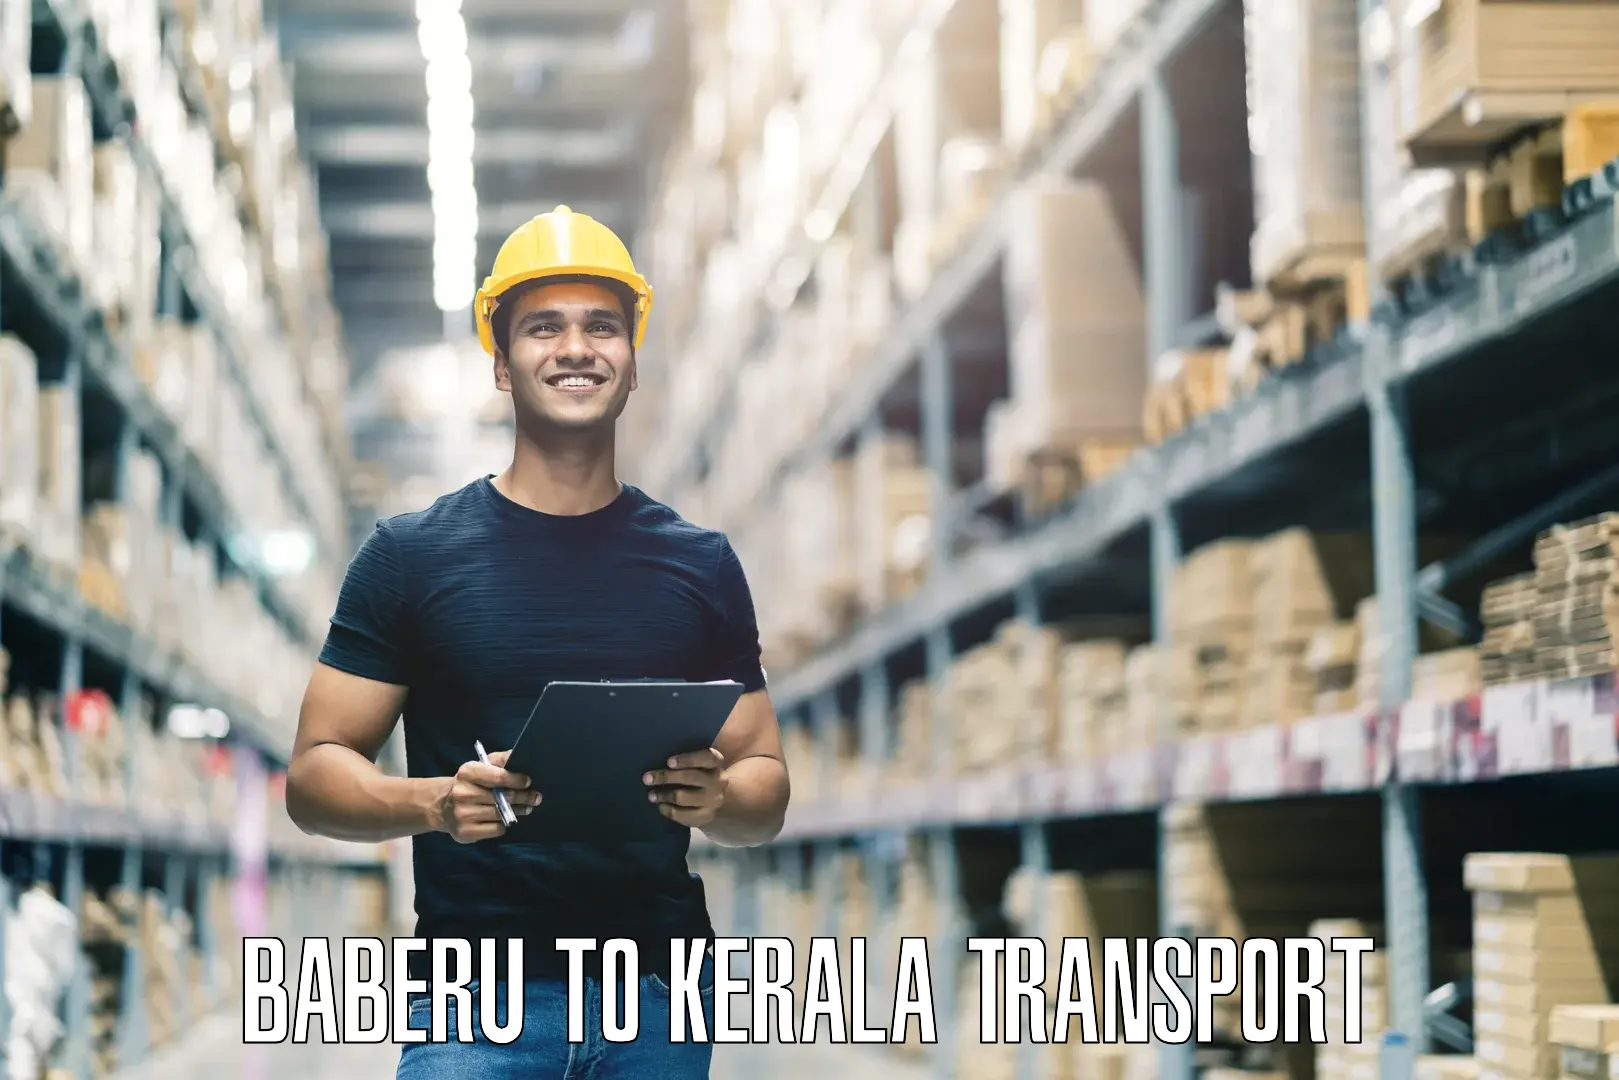 Daily parcel service transport Baberu to Chervathur